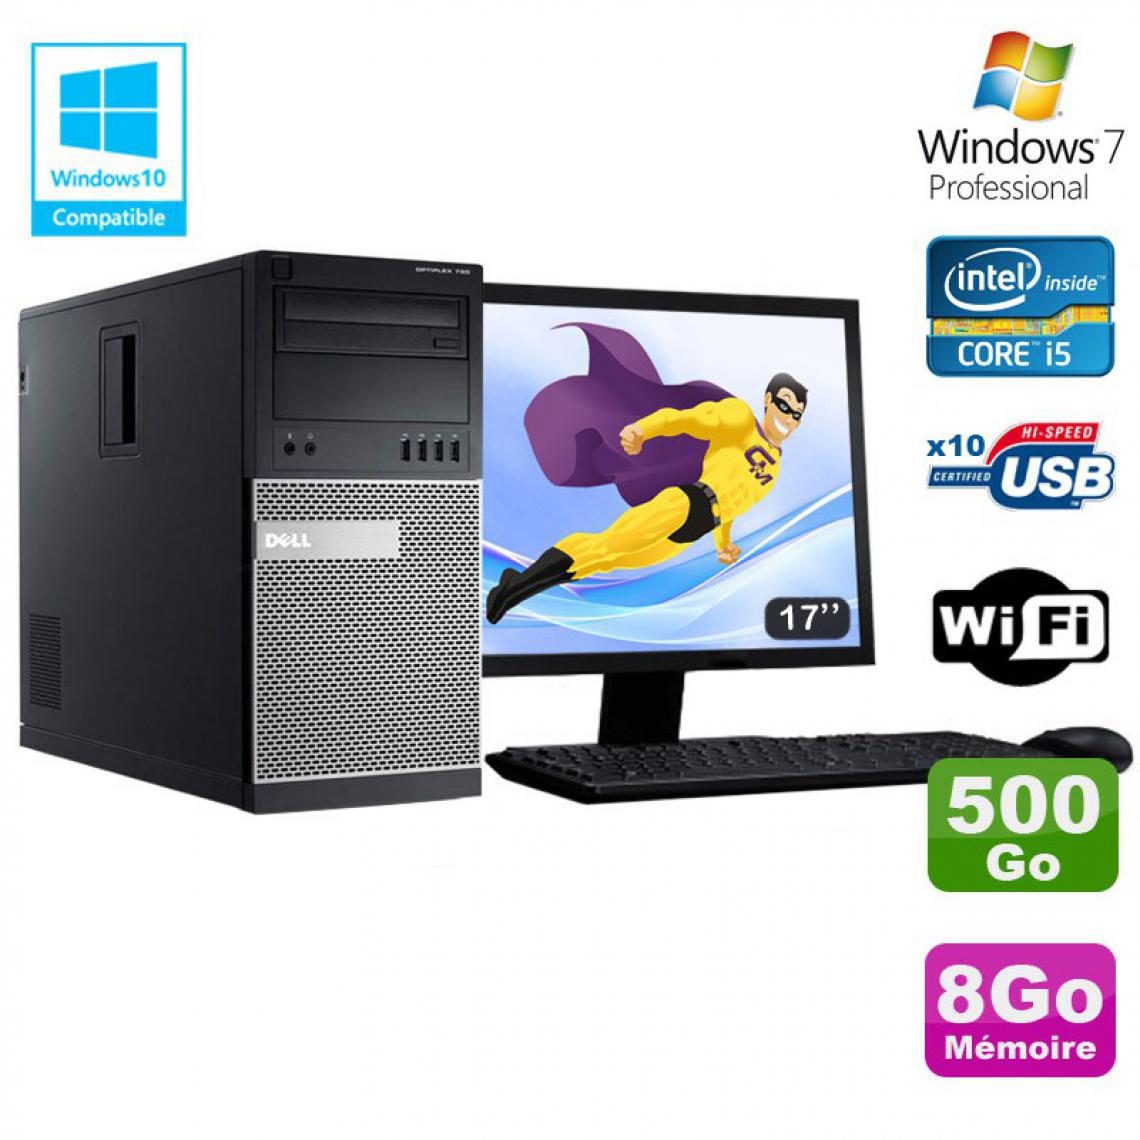 Dell - Lot PC Tour Dell 790 Core I5 3.1Ghz 8Go Disque 500Go DVD WIFI Win 7 + Ecran 17" - PC Fixe